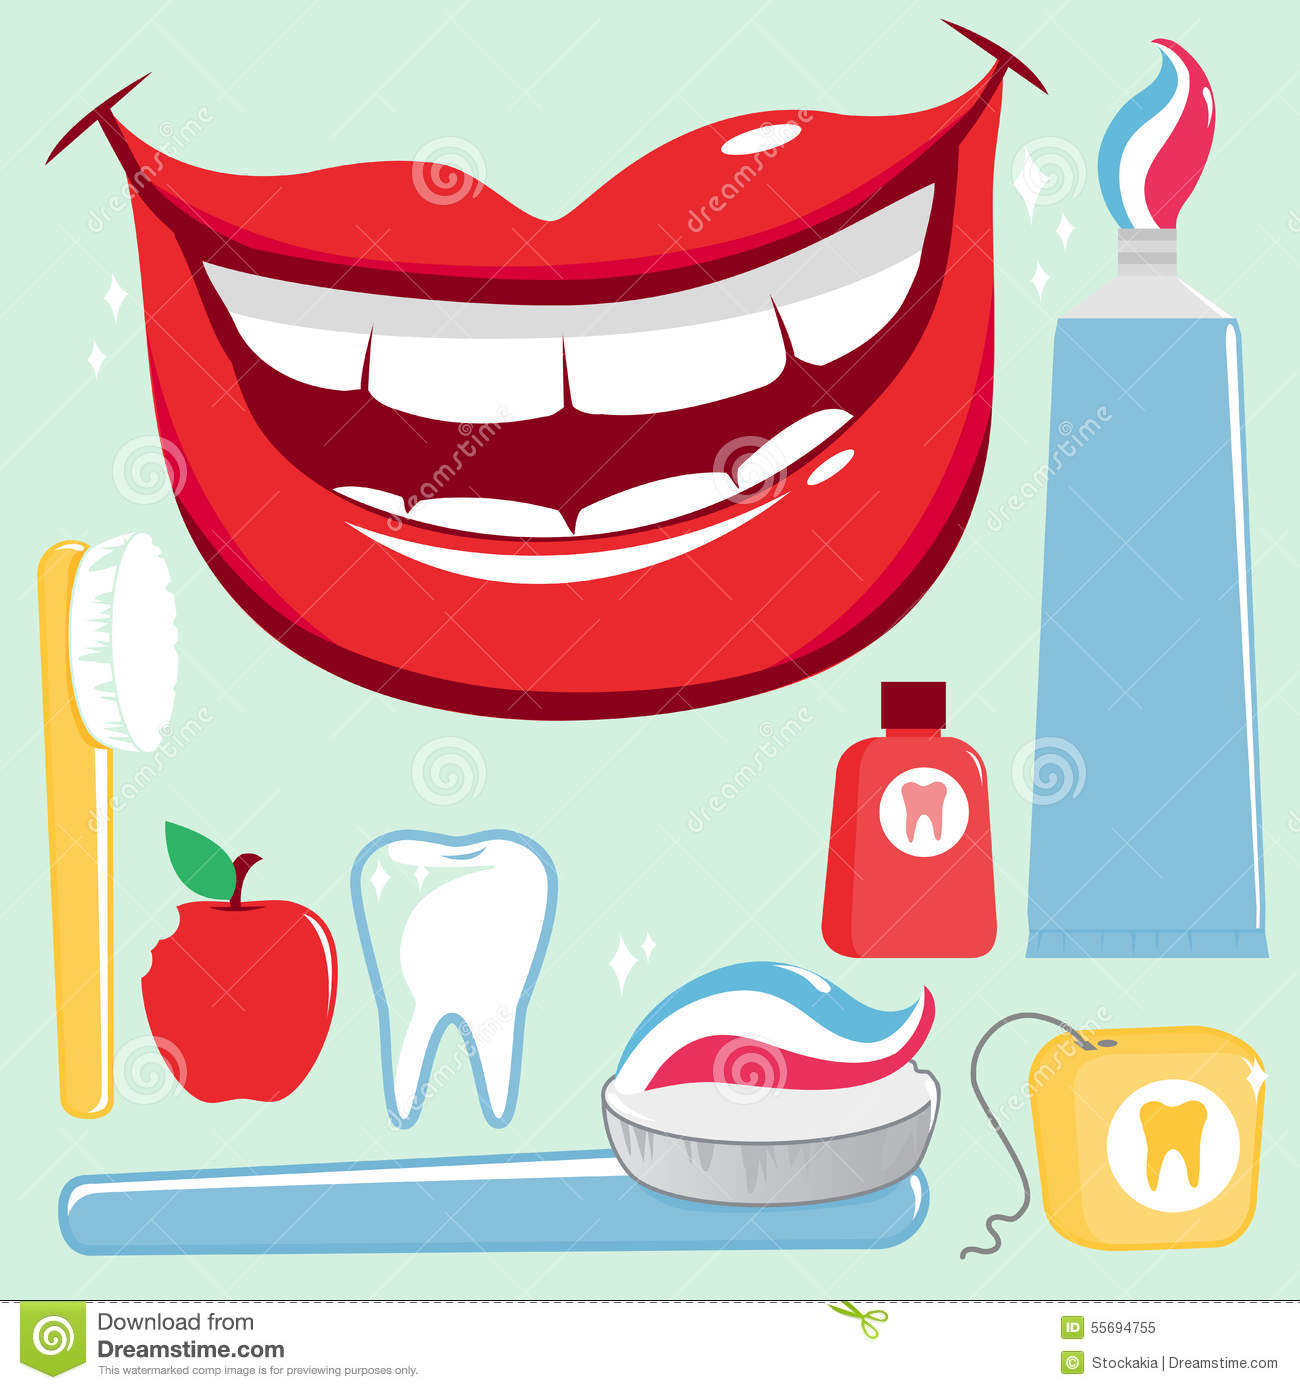 Dental Hygiene Cartoon.